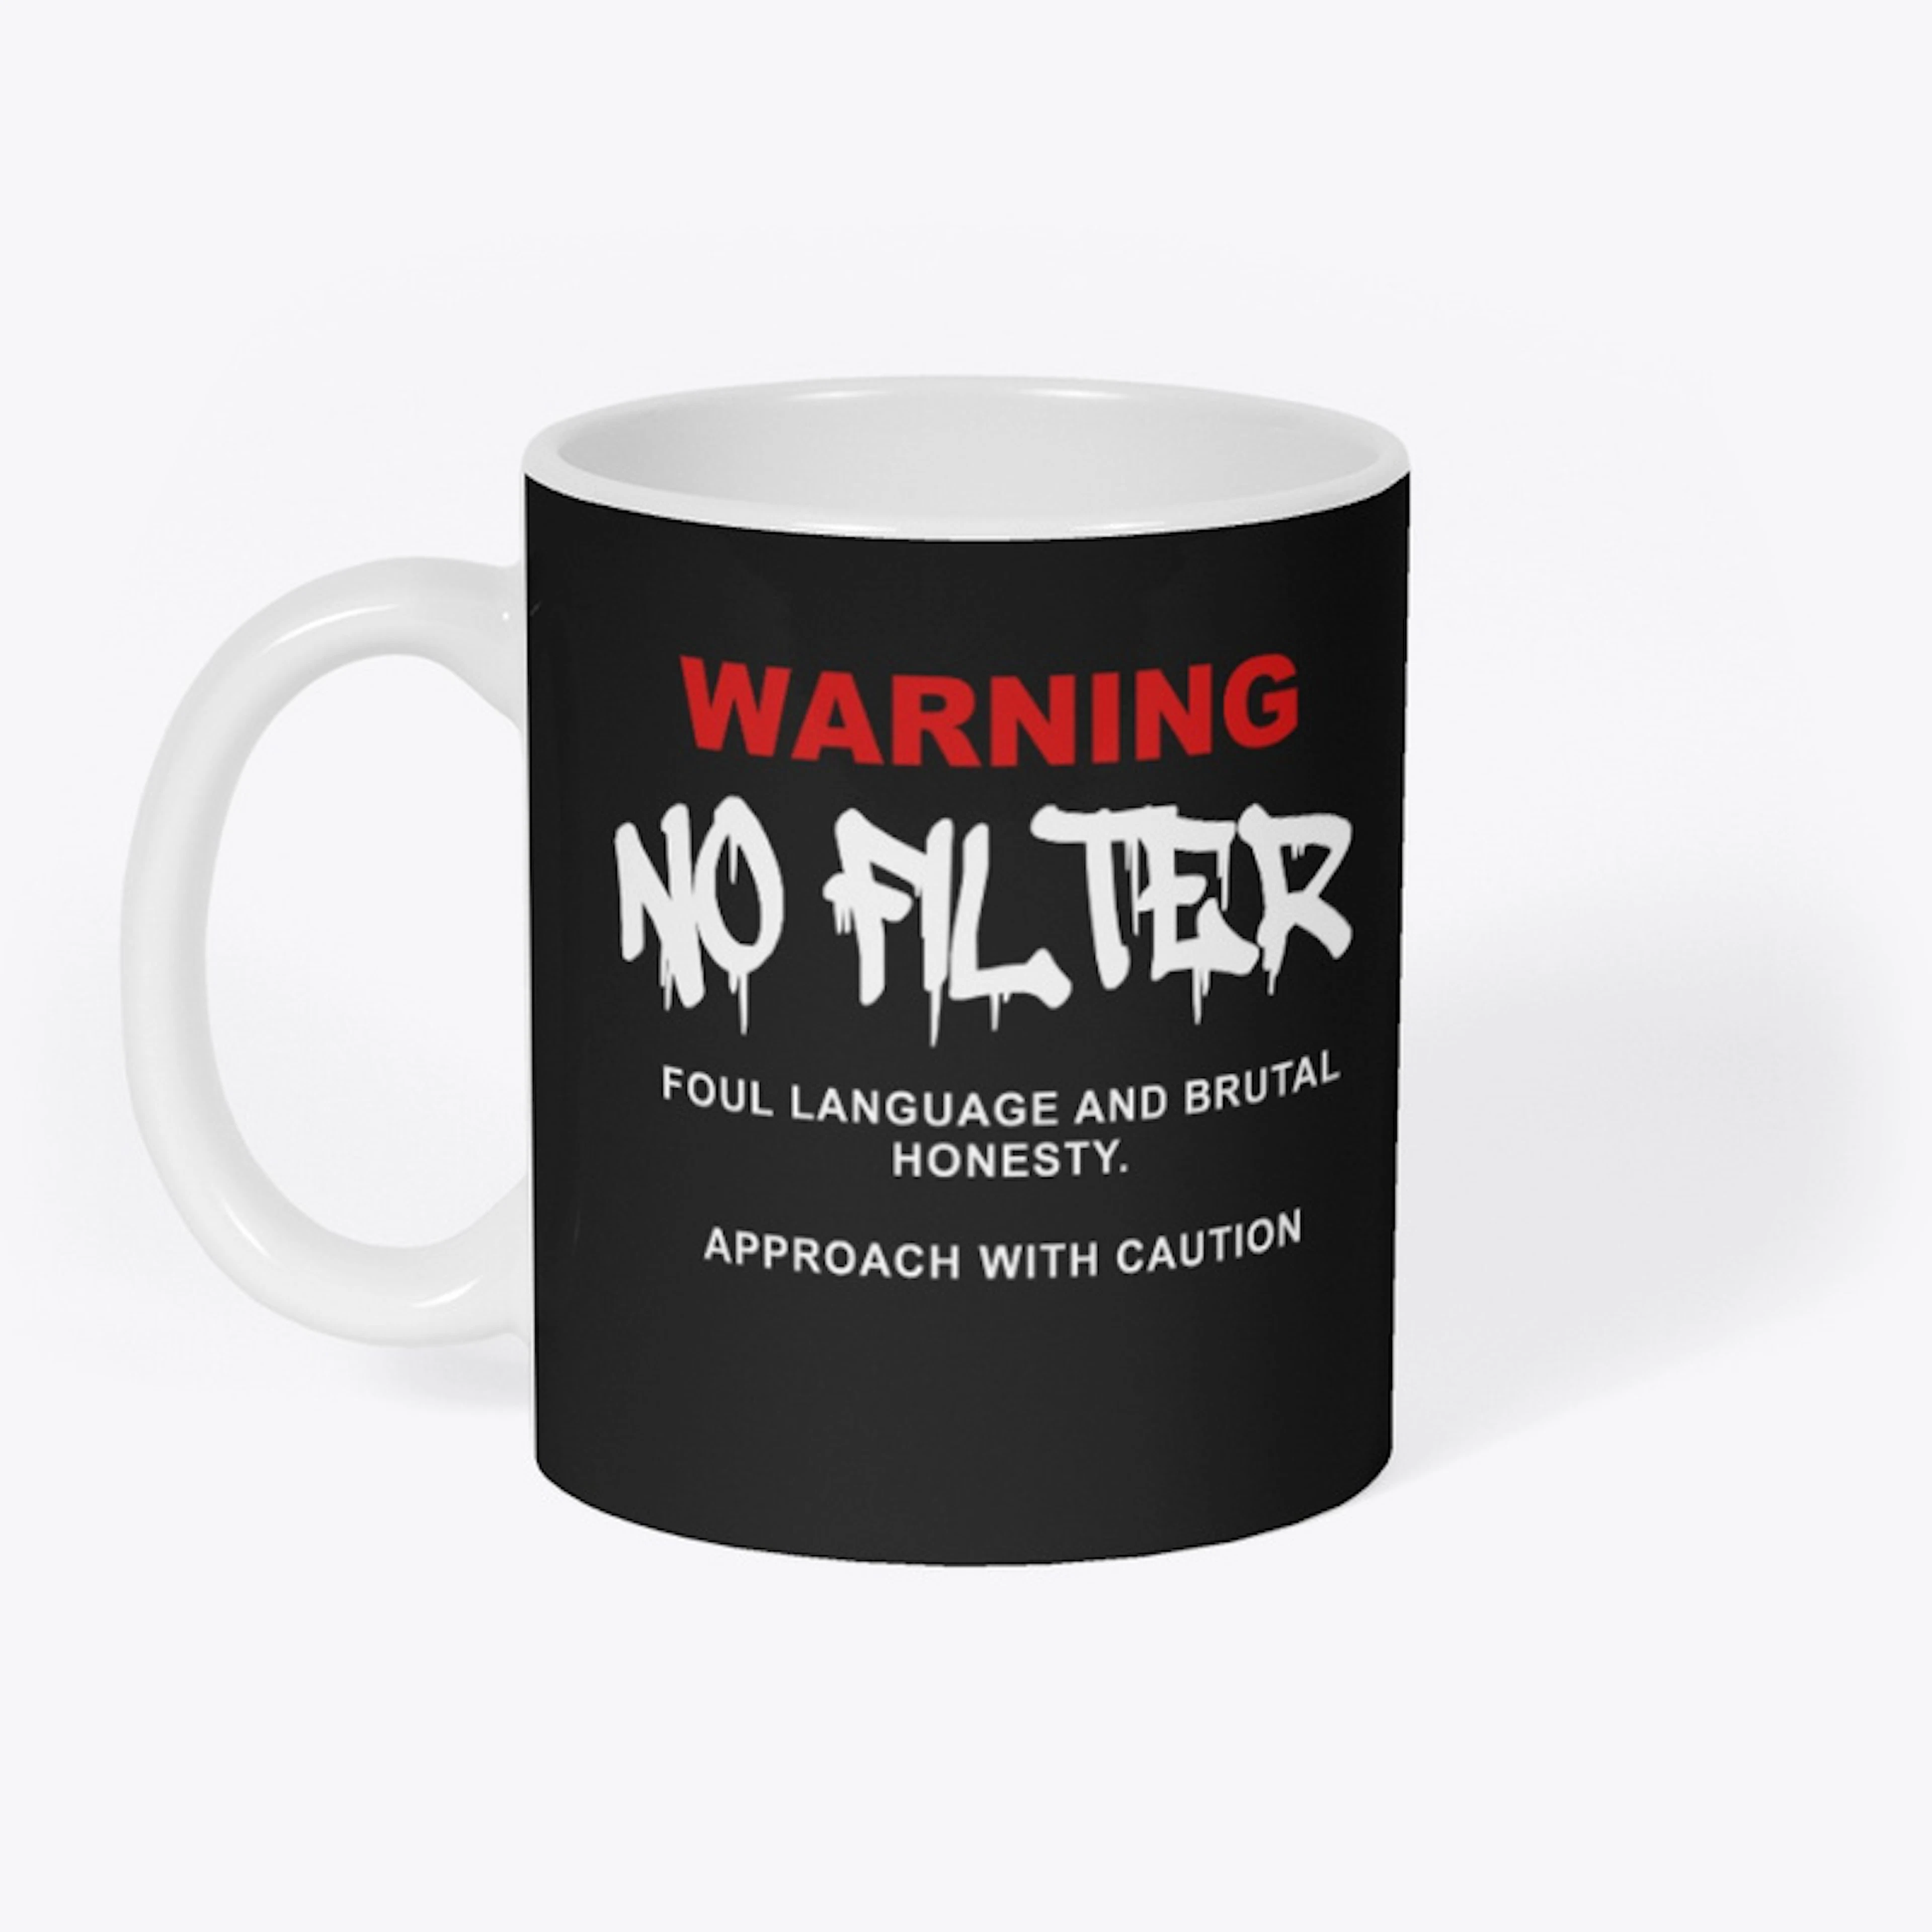 WARNING! No Filter